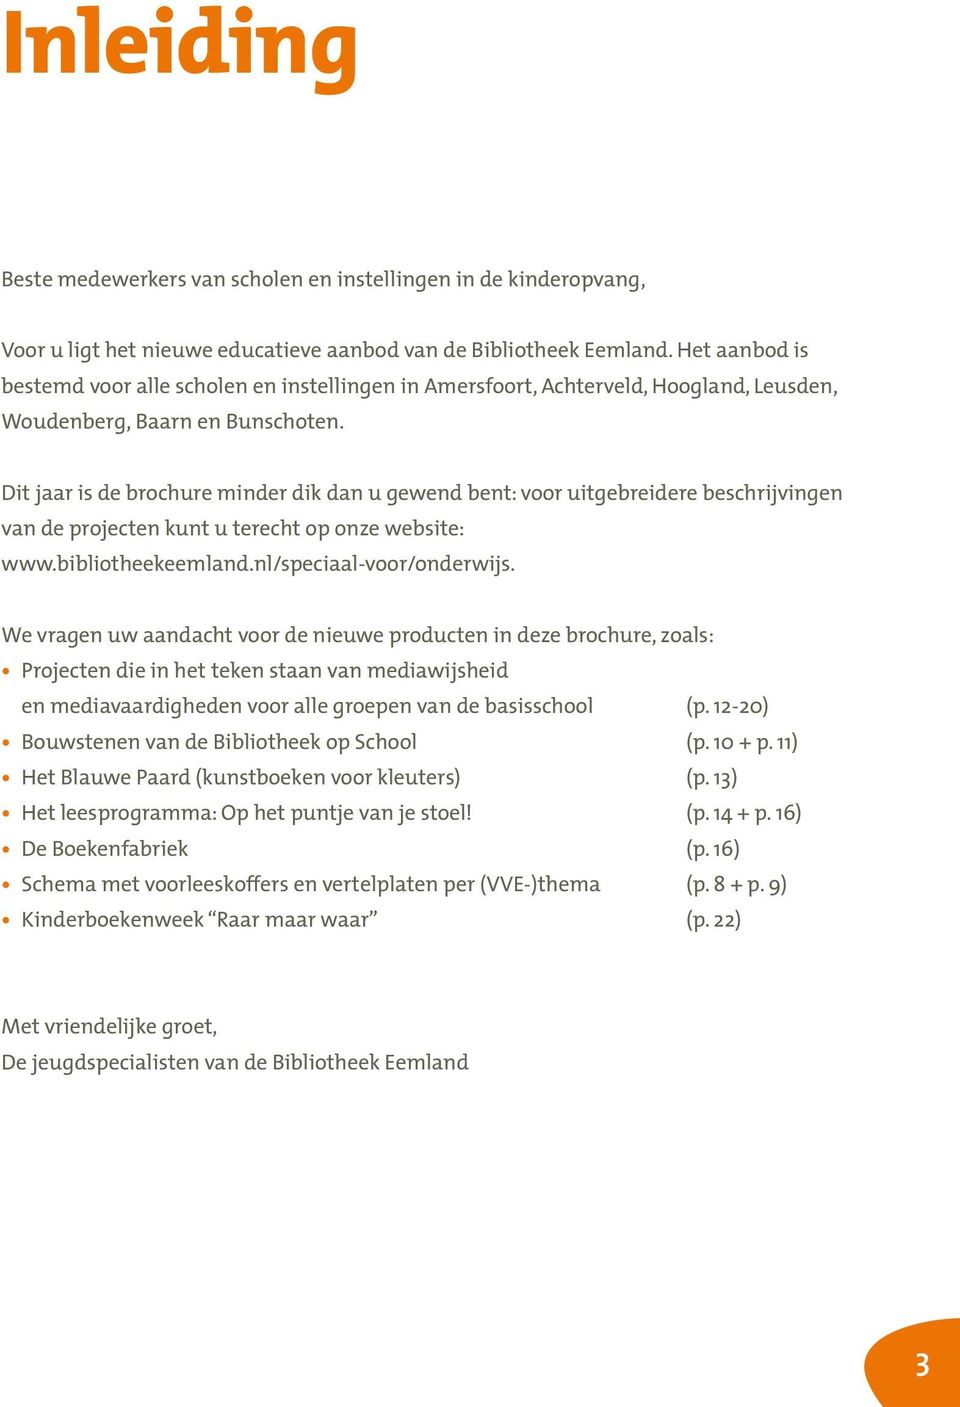 Dit jaar is de brochure minder dik dan u gewend bent: voor uitgebreidere beschrijvingen van de projecten kunt u terecht op onze website: www.bibliotheekeemland.nl/speciaal-voor/onderwijs.